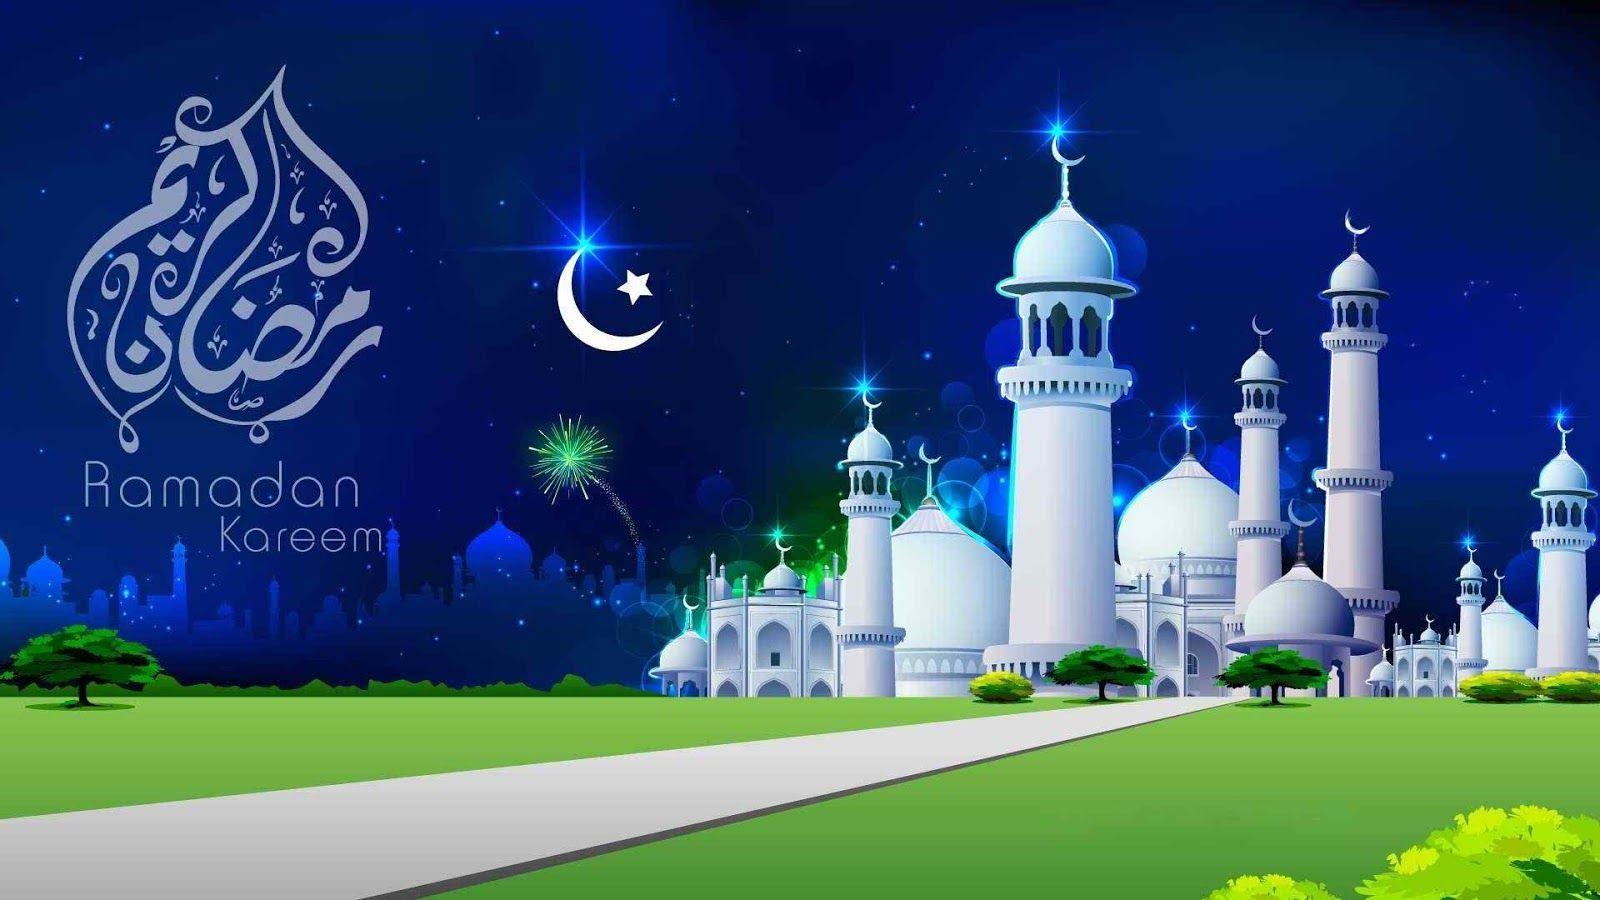 Ramadan Mubarak Image 2016 Islamic Wallpaper for Ramazan